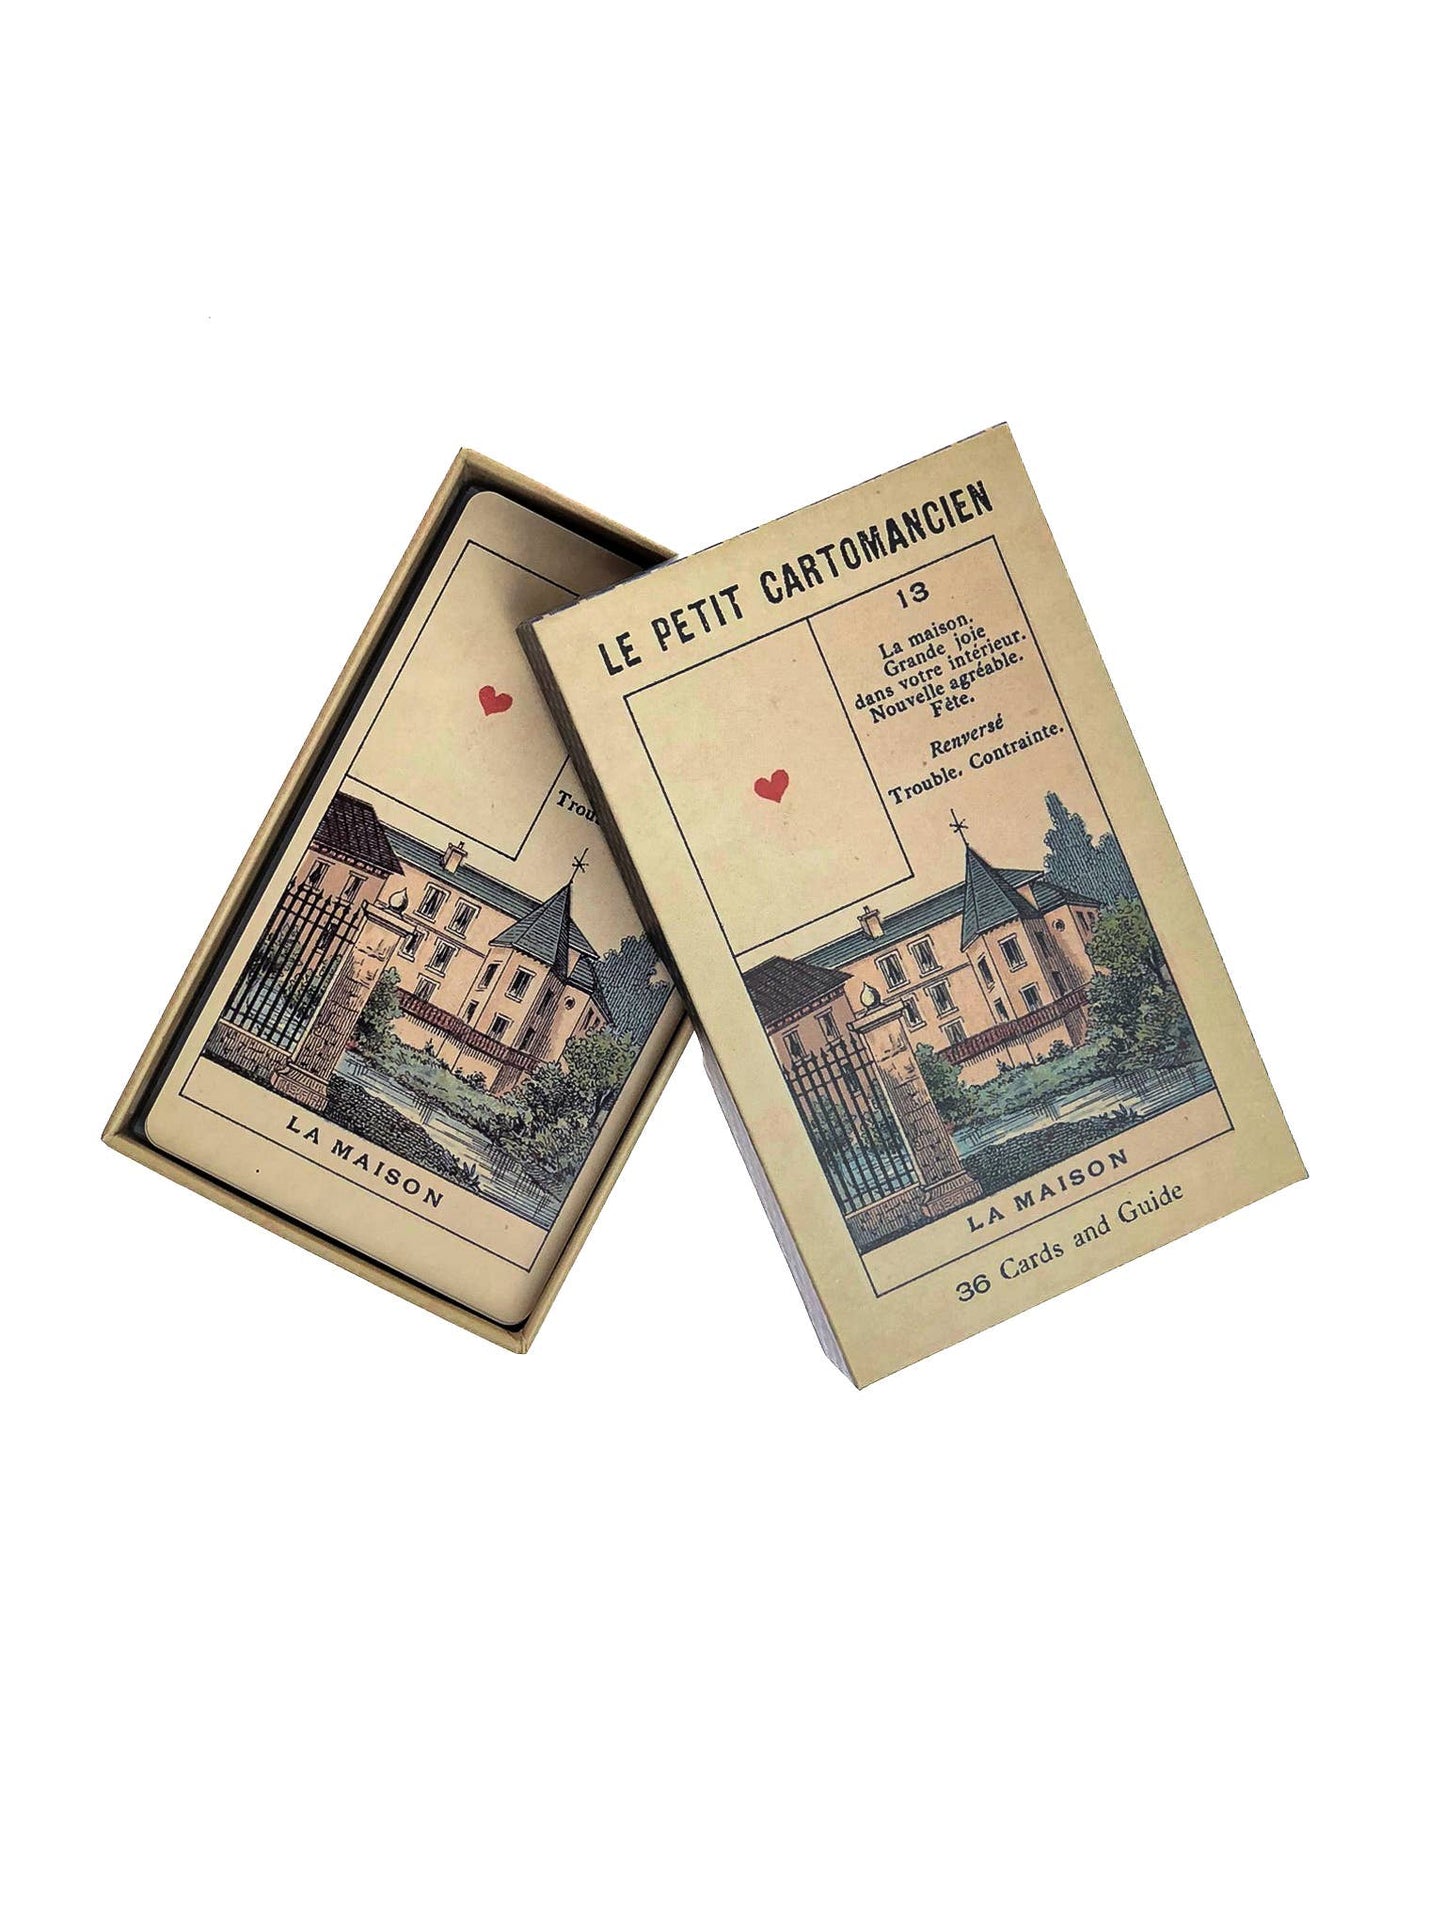 Le Petit Cartomancien & Guide | facsimile of a vintage deck